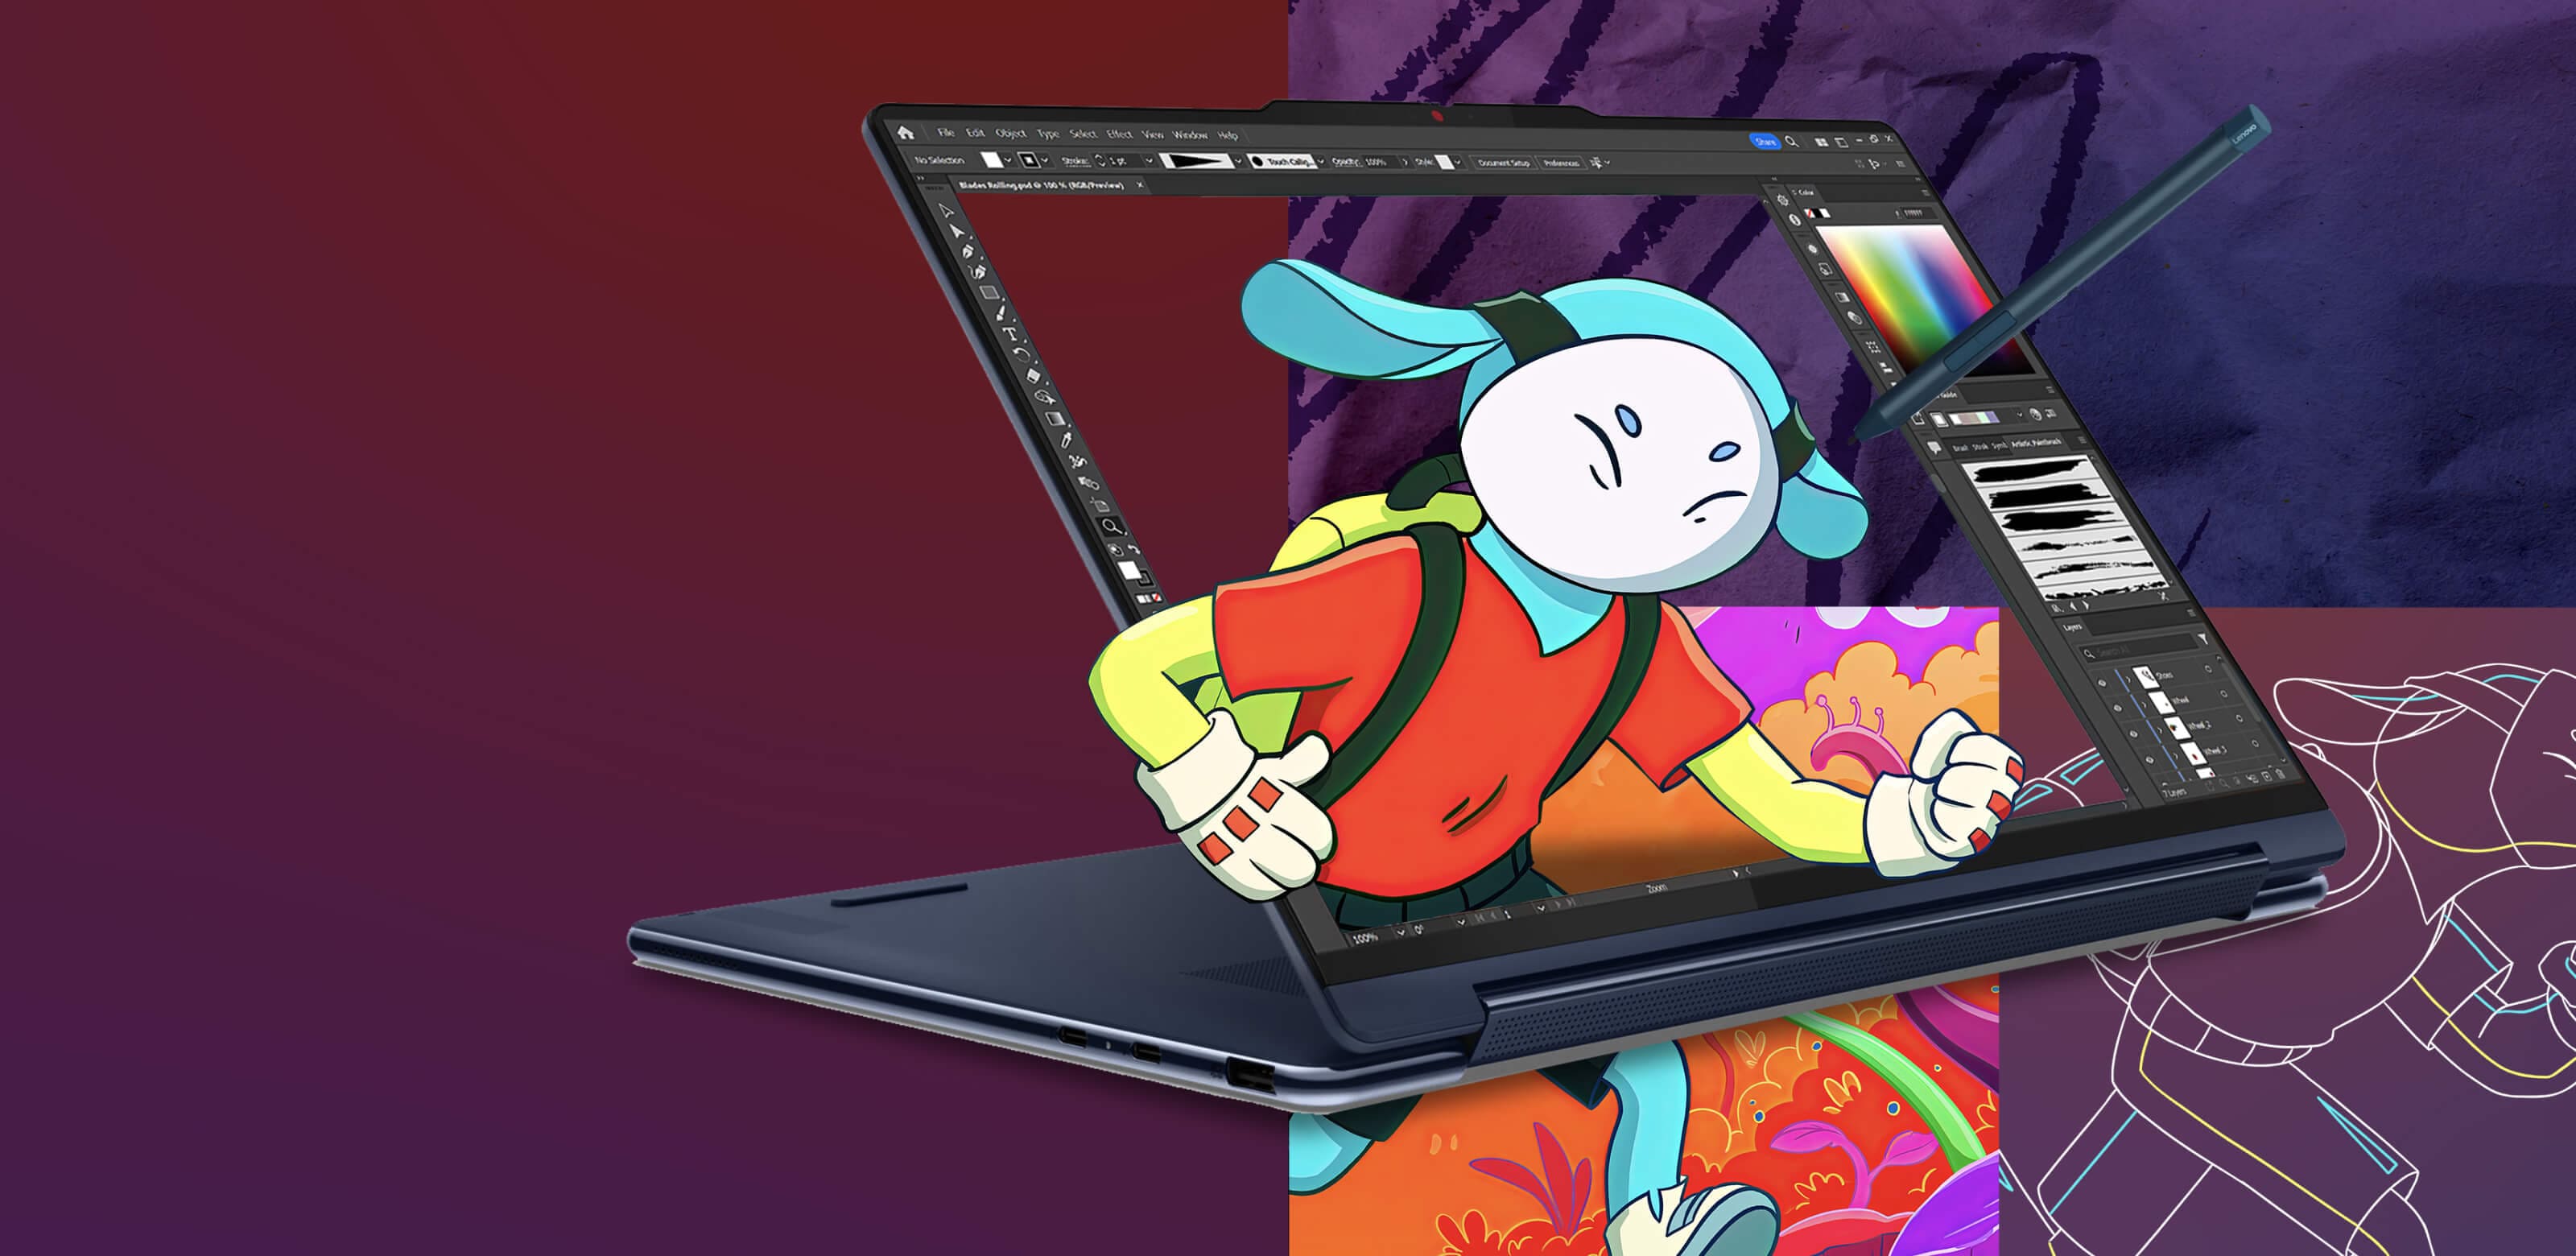 Ноутбук Lenovo Yoga в режиме подставки, на экране программа-редактор изображений с анимационным персонажем, выпрыгивающим из экрана.